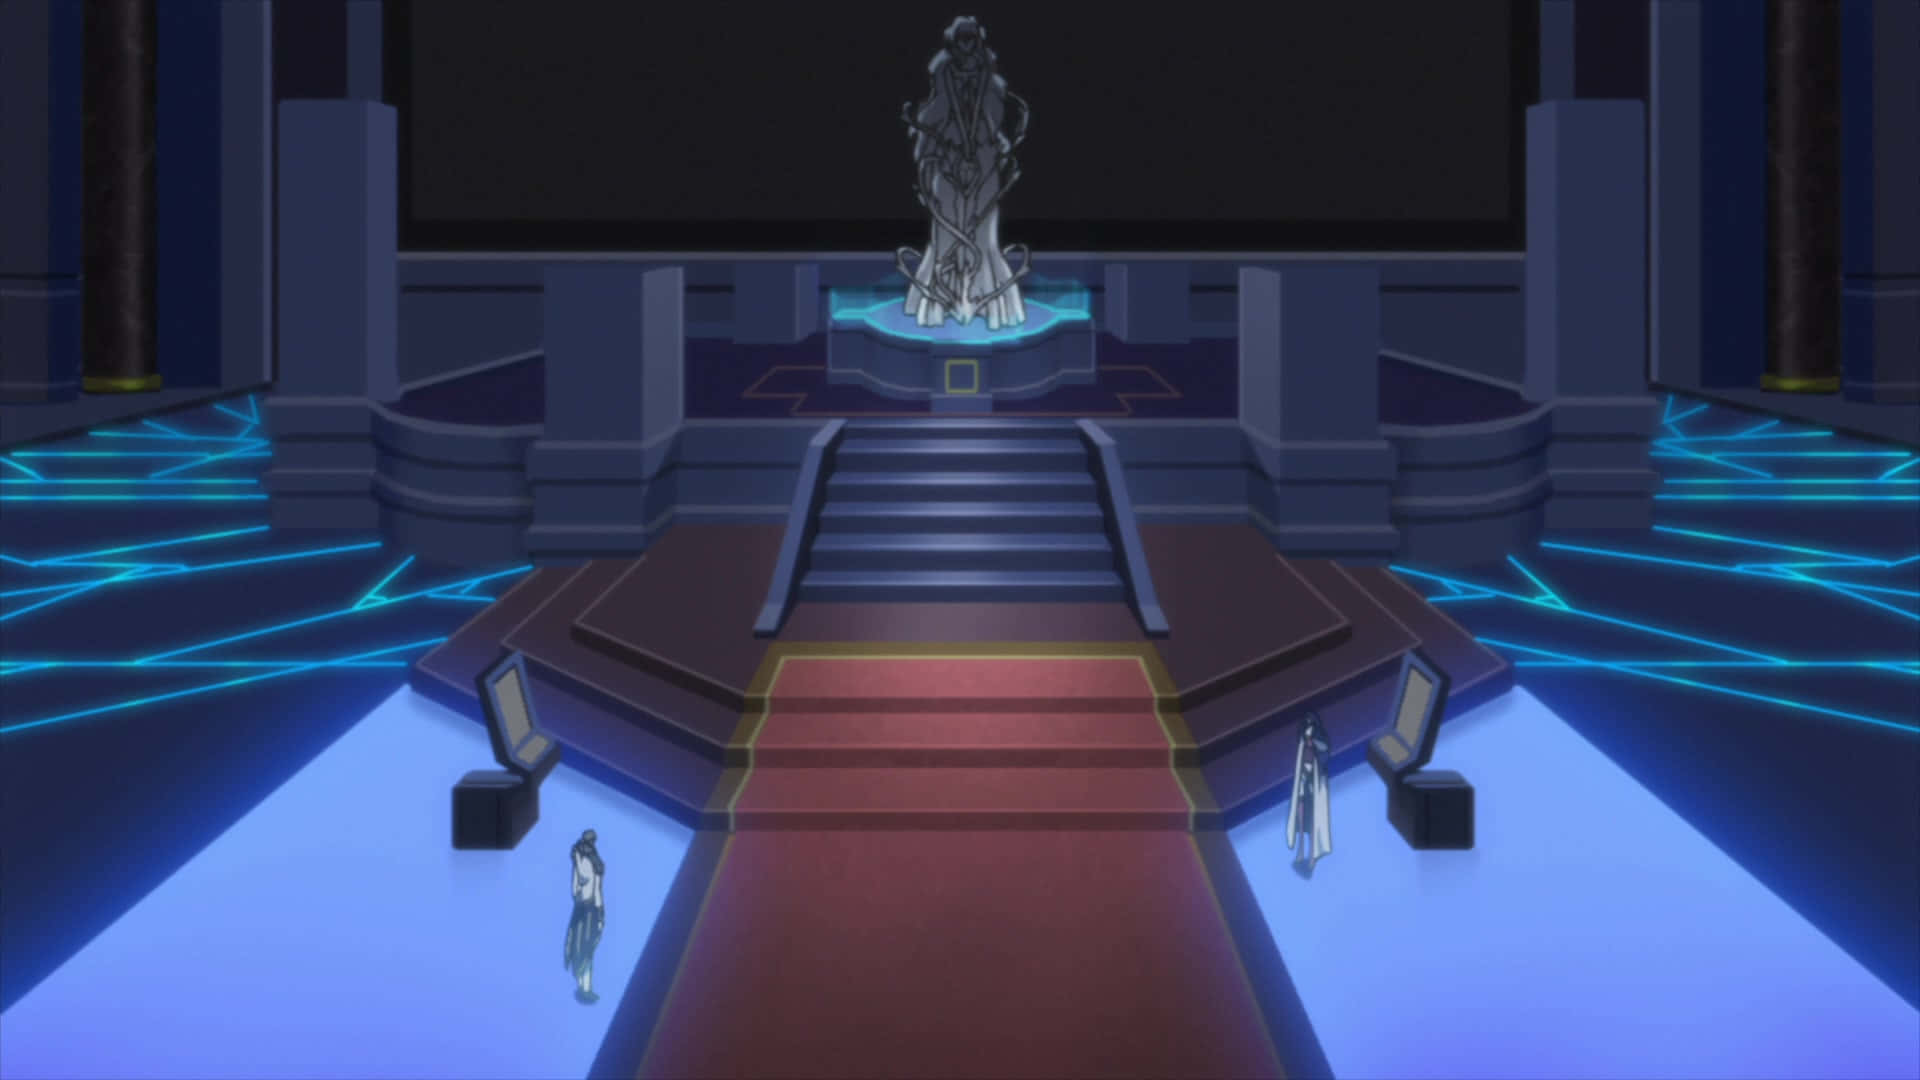 Einvideospielscreenshot Von Einem Raum Mit Einer Statue.